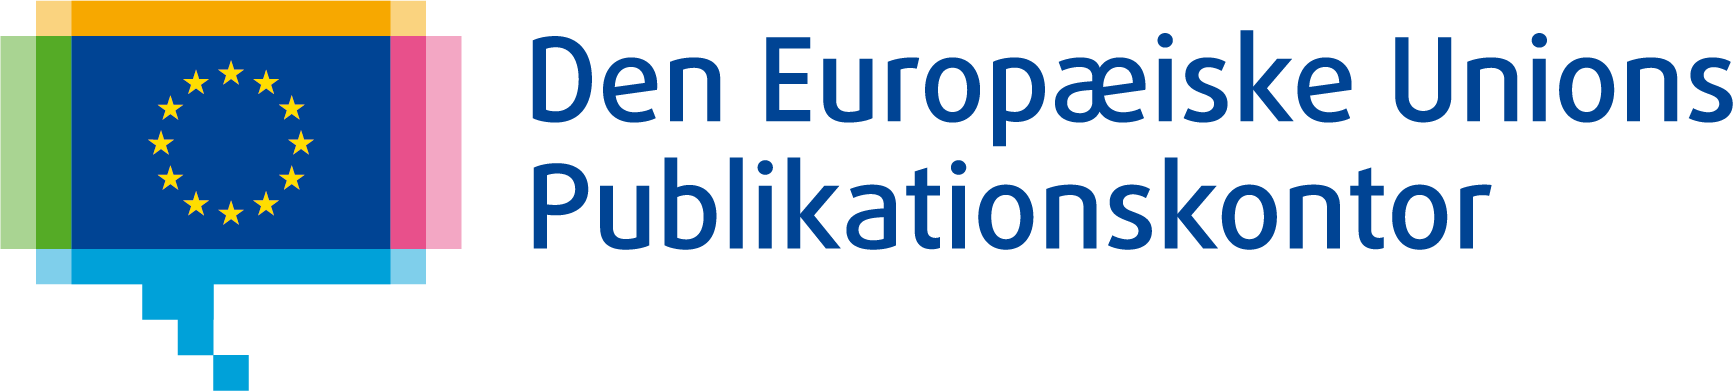 Den Europæiske Unions Publikationskontor